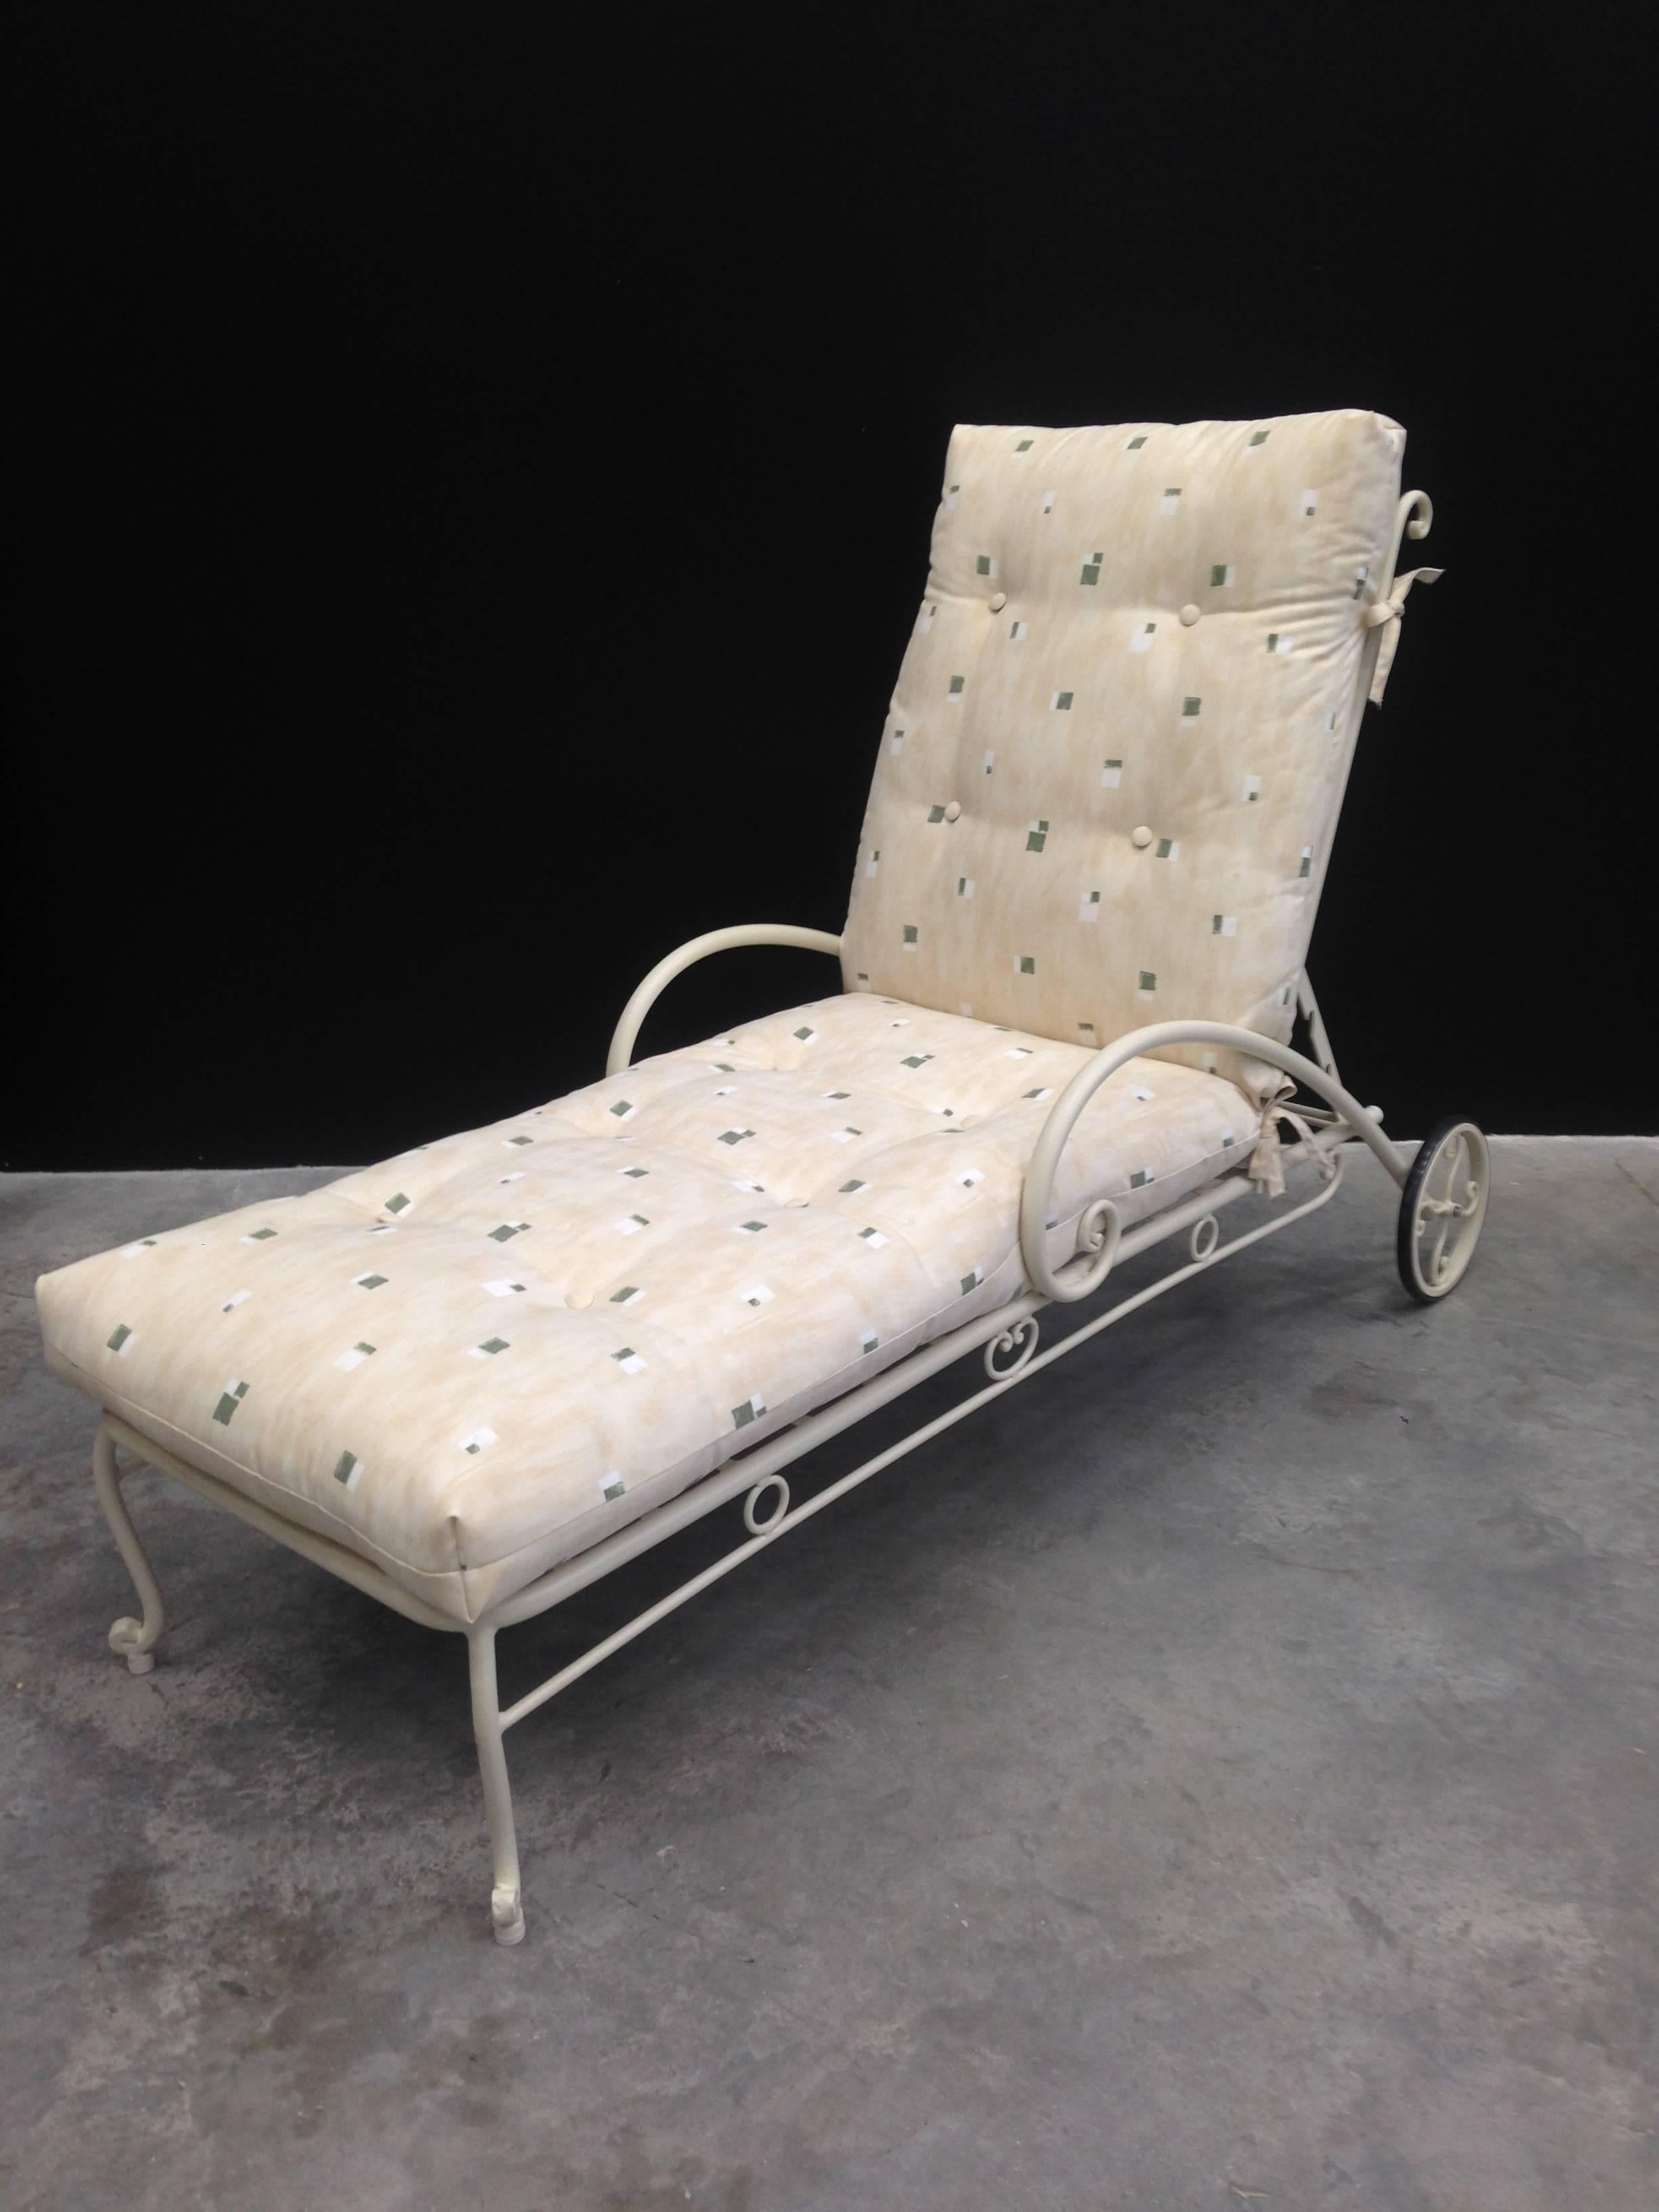 Espagnol Chaise longue réglable avec roues, mobilier de jardin. Intérieur et extérieur en vente